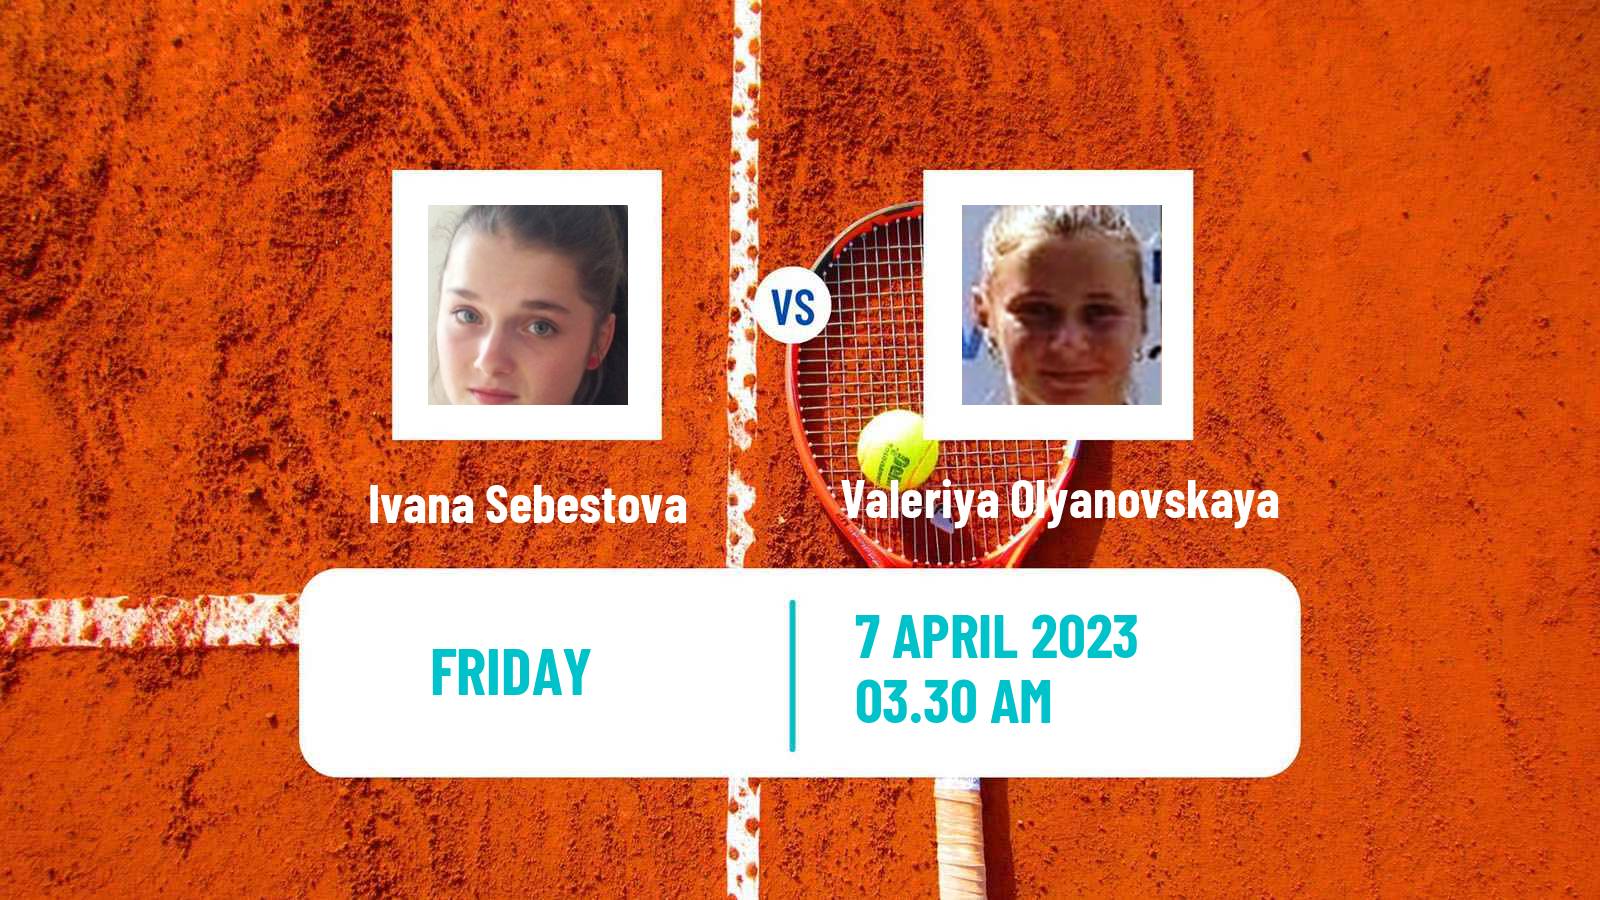 Tennis ITF Tournaments Ivana Sebestova - Valeriya Olyanovskaya